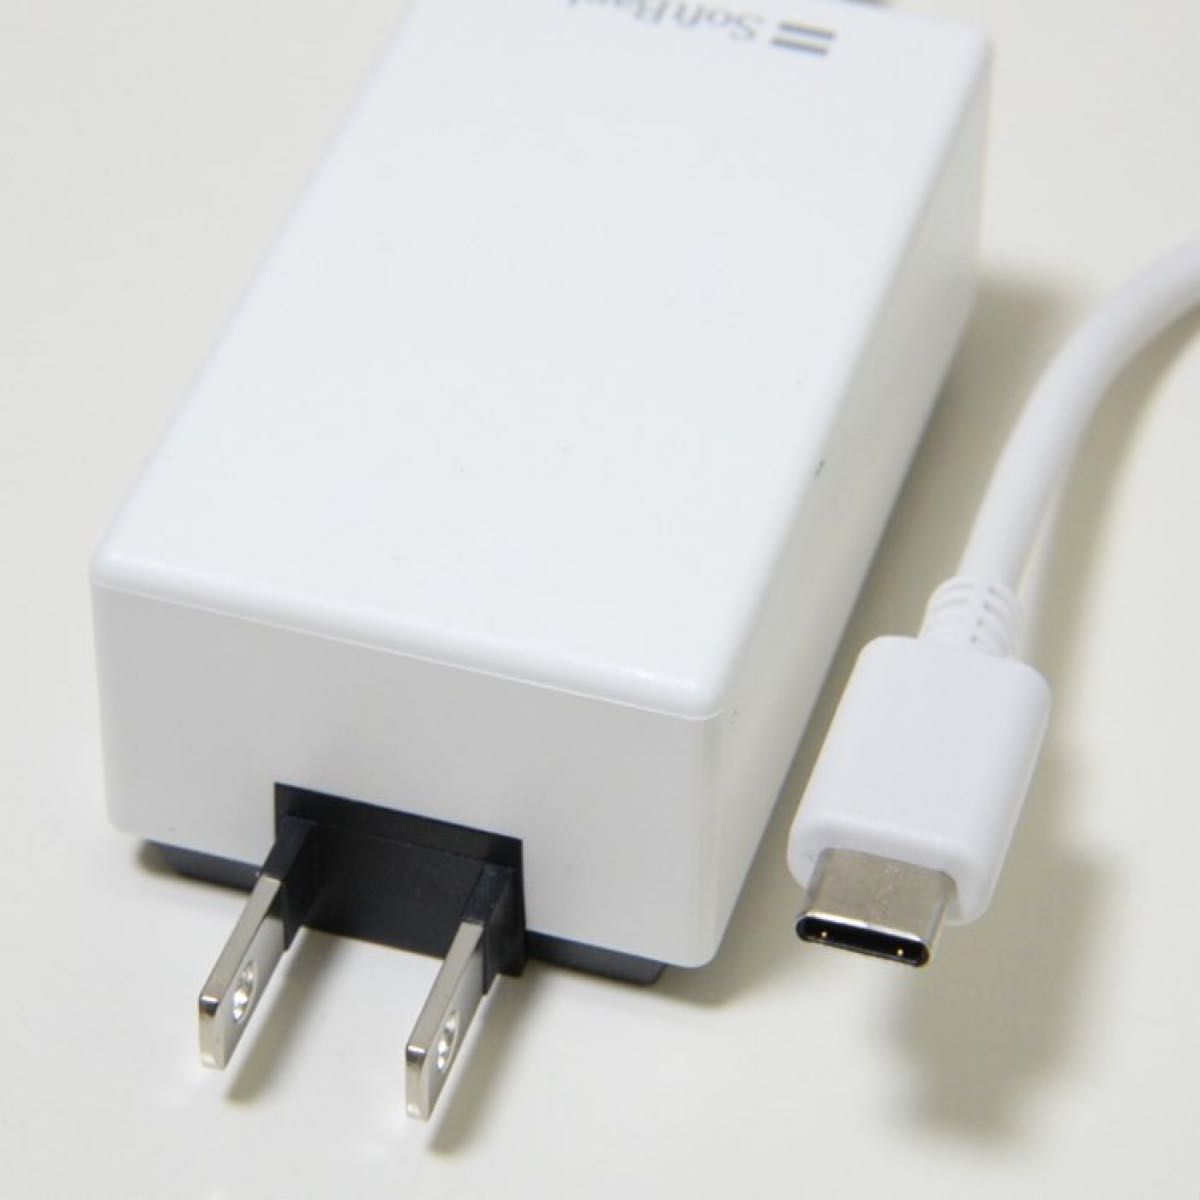 SoftBank ソフトバンクモバイル SB-AC19-TCPD USB Type-C 急速充電 ACアダプタ 2個セット